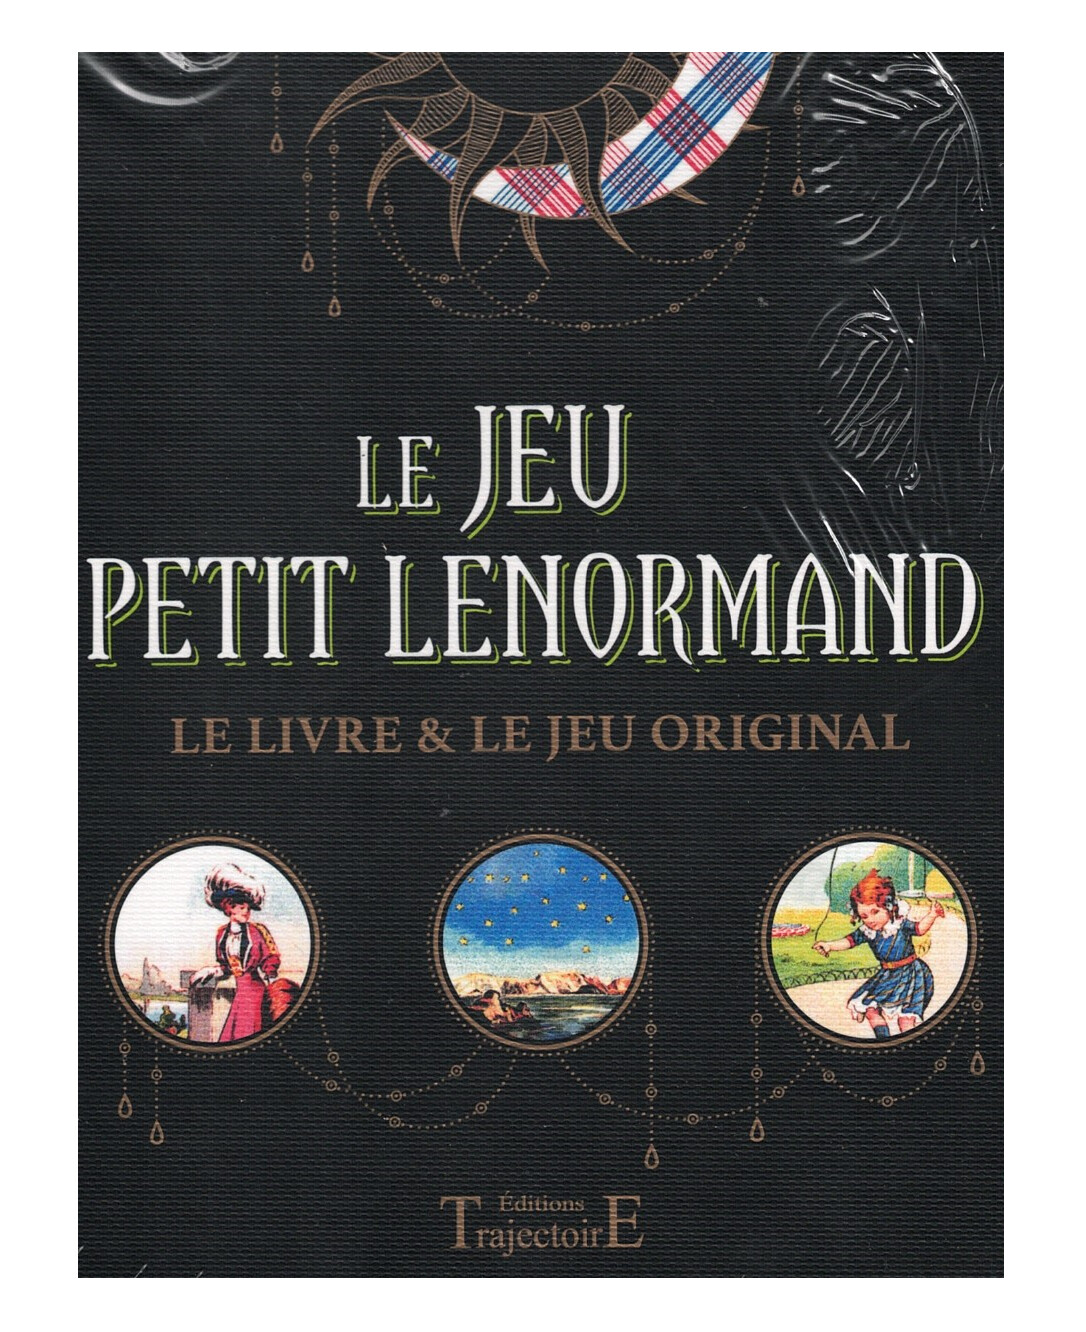 Le Jeu Petit Lenormand le livre & le jeu original